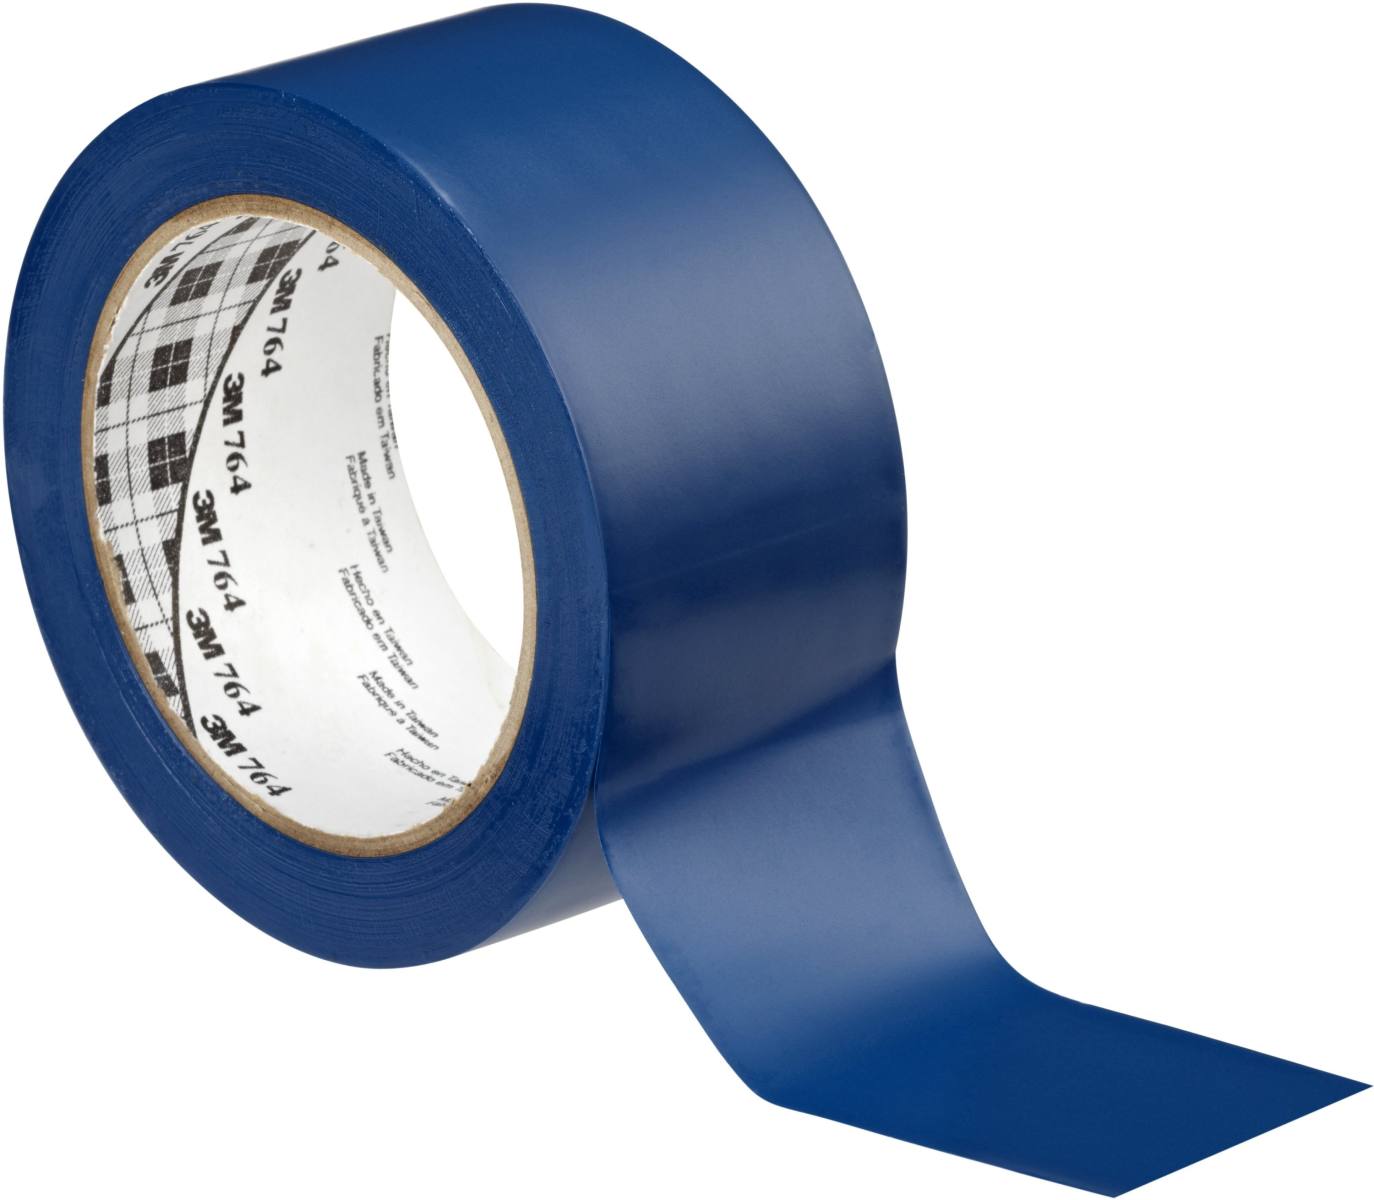 3M Nastro adesivo multiuso in PVC 764, blu, 50 mm x 33 m, confezionato singolarmente in una pratica confezione